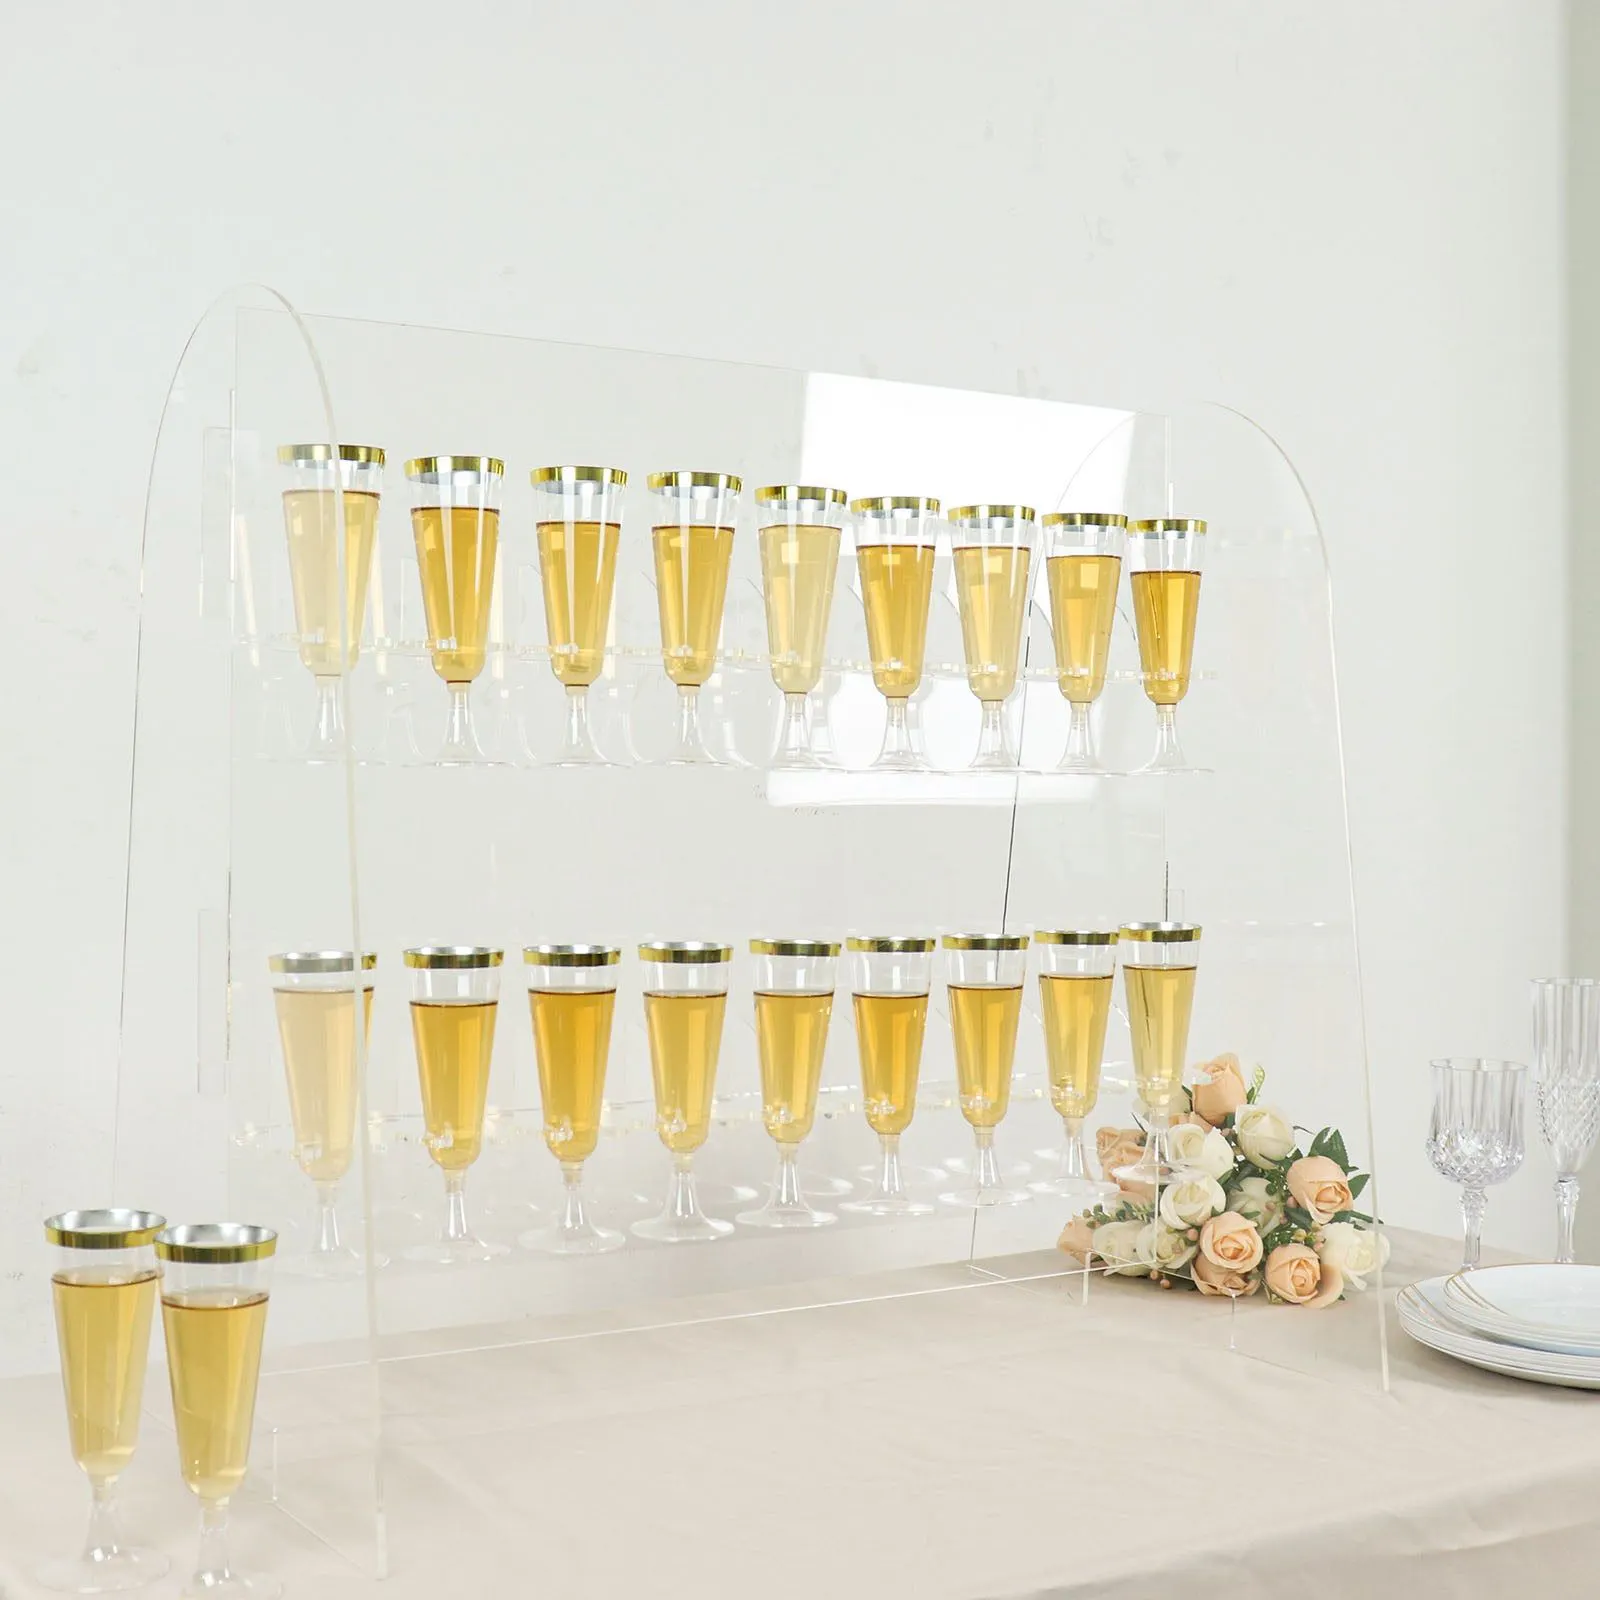 シャンパンガラスホルダー背景アクリルシャンパン壁工場用品結婚式prosecco壁